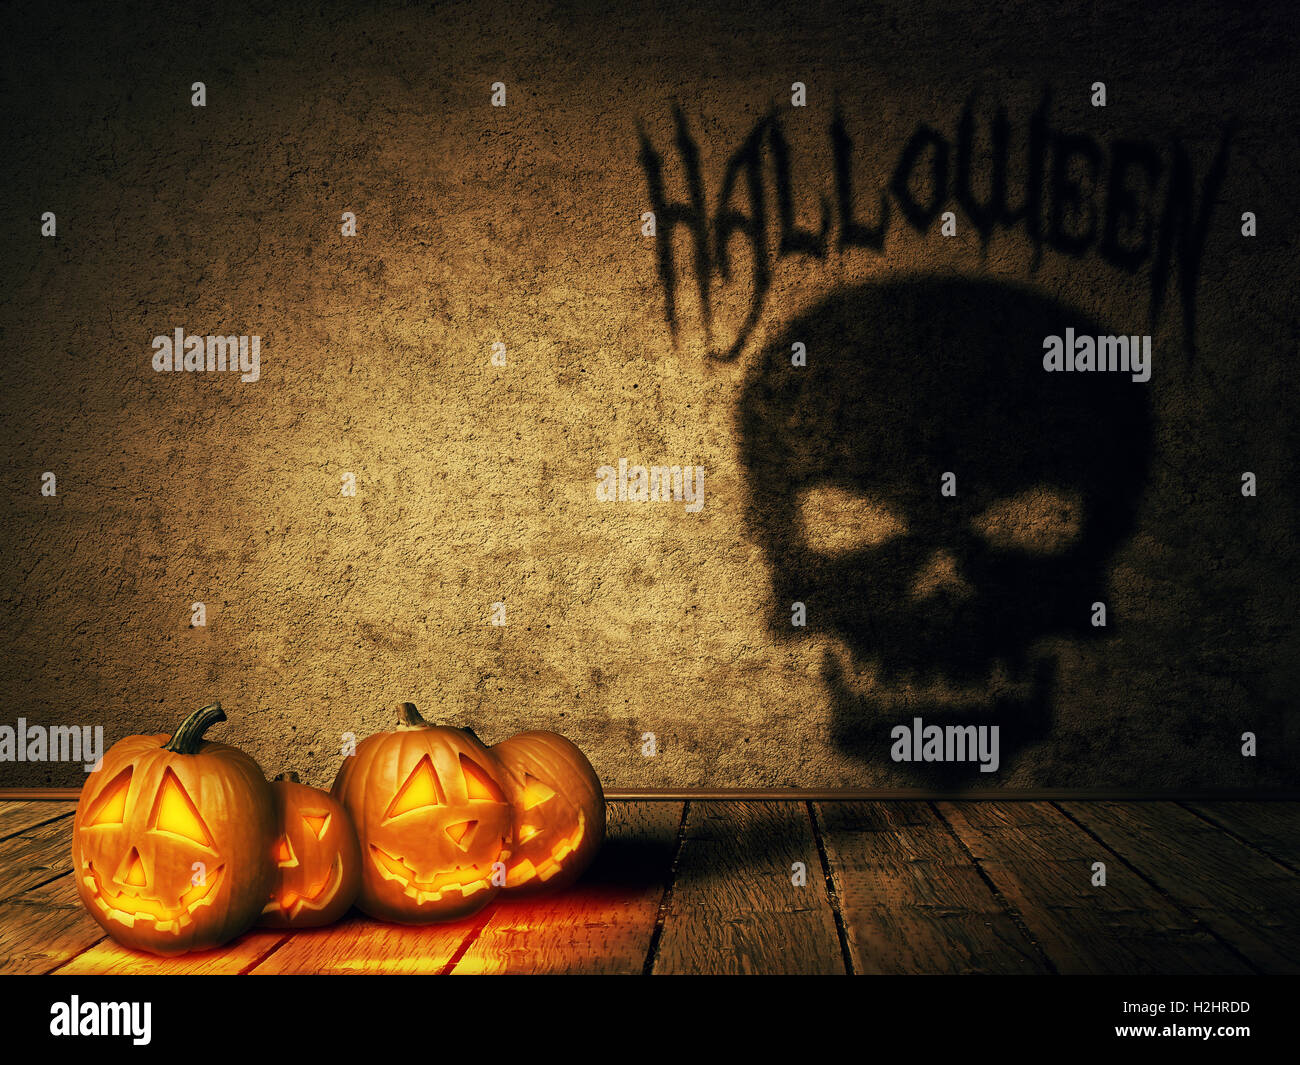 Lot de citrouilles, jack-o'-lantern jette une ombre en forme de crâne. Surreal Halloween concept. Banque D'Images